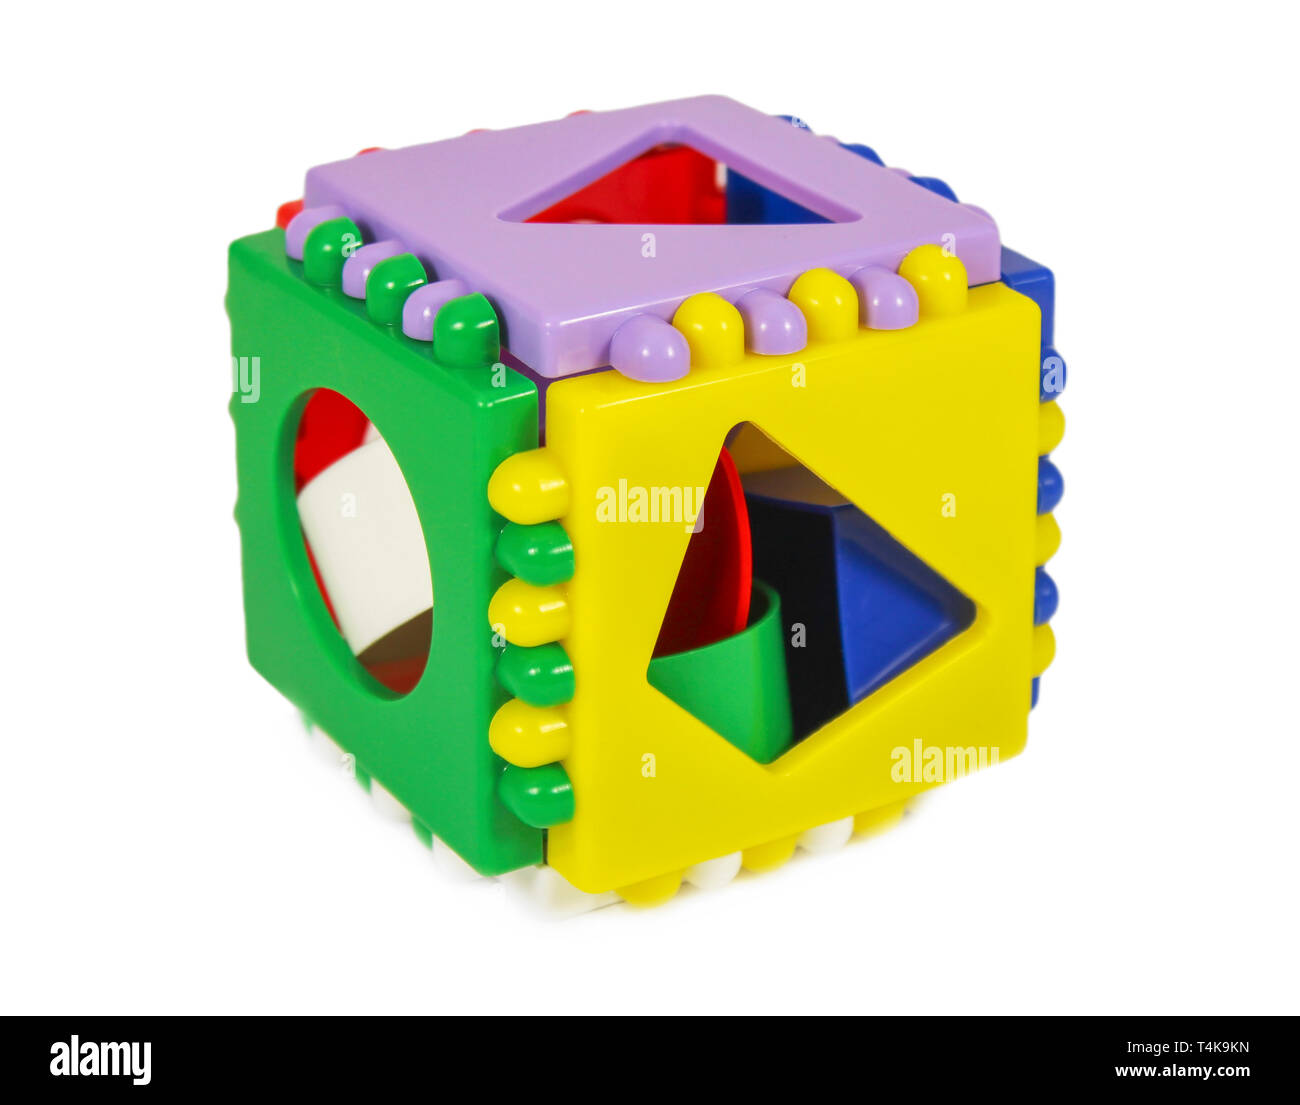 Juguetes educativos para niños rompecabezas en forma de cubo con orificios  de distintas formas Fotografía de stock - Alamy